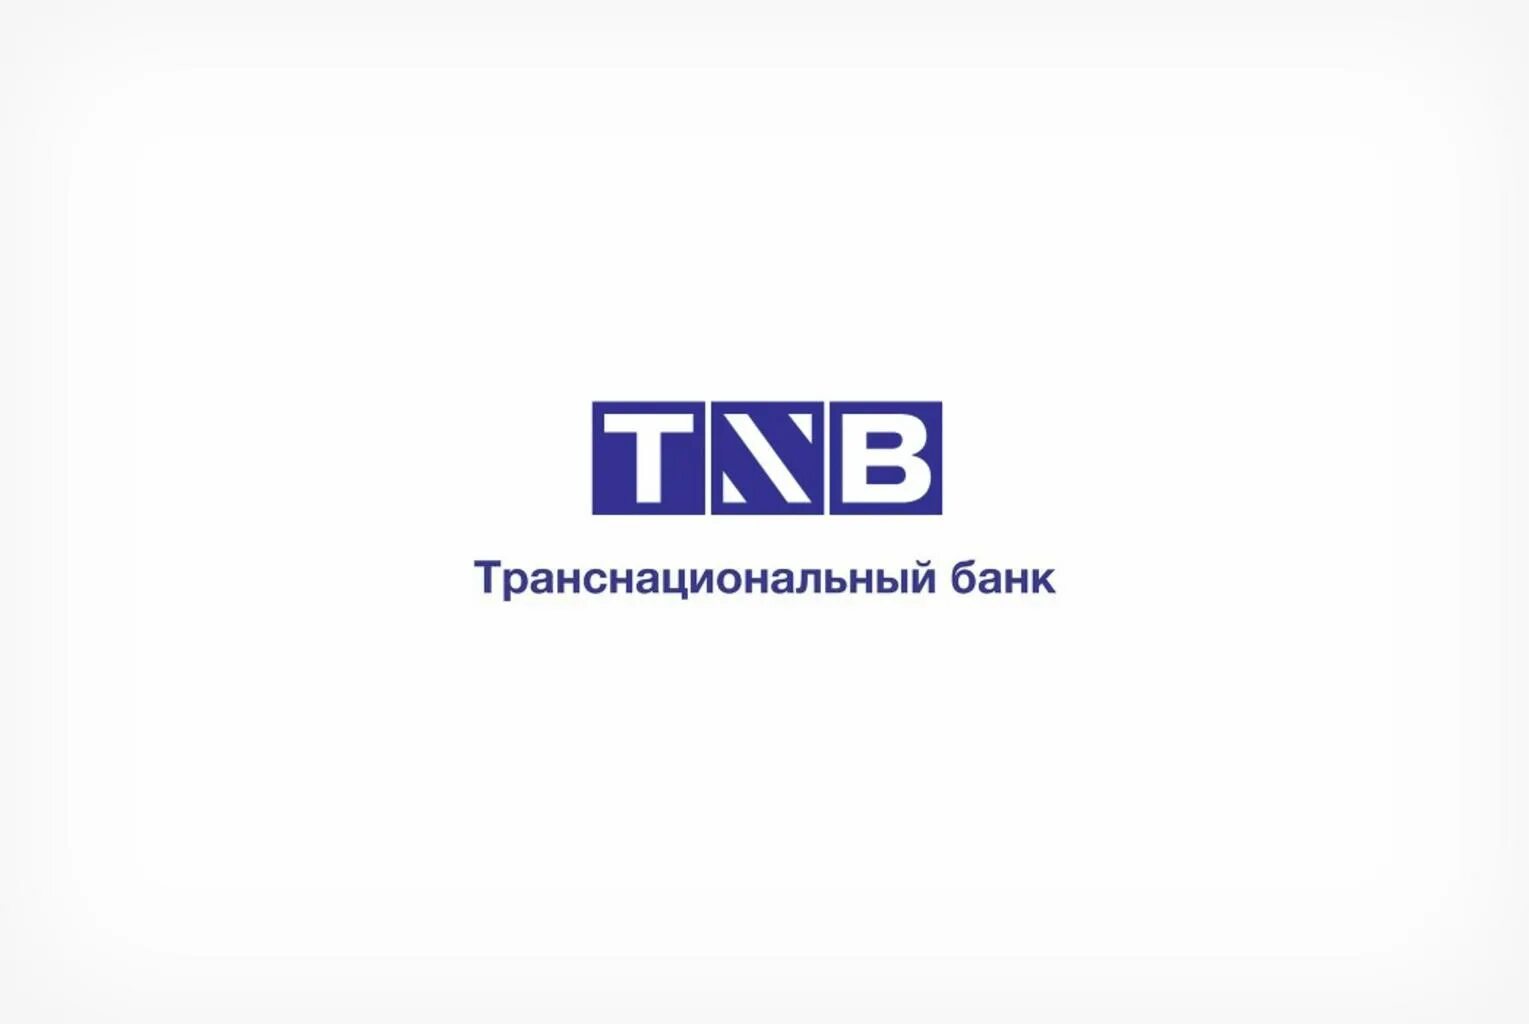 Law 03 ru. Транснациональные банки. Транснациональный банк. Логотип транснациональный банк. Транснациональный банк транснациональные банки.